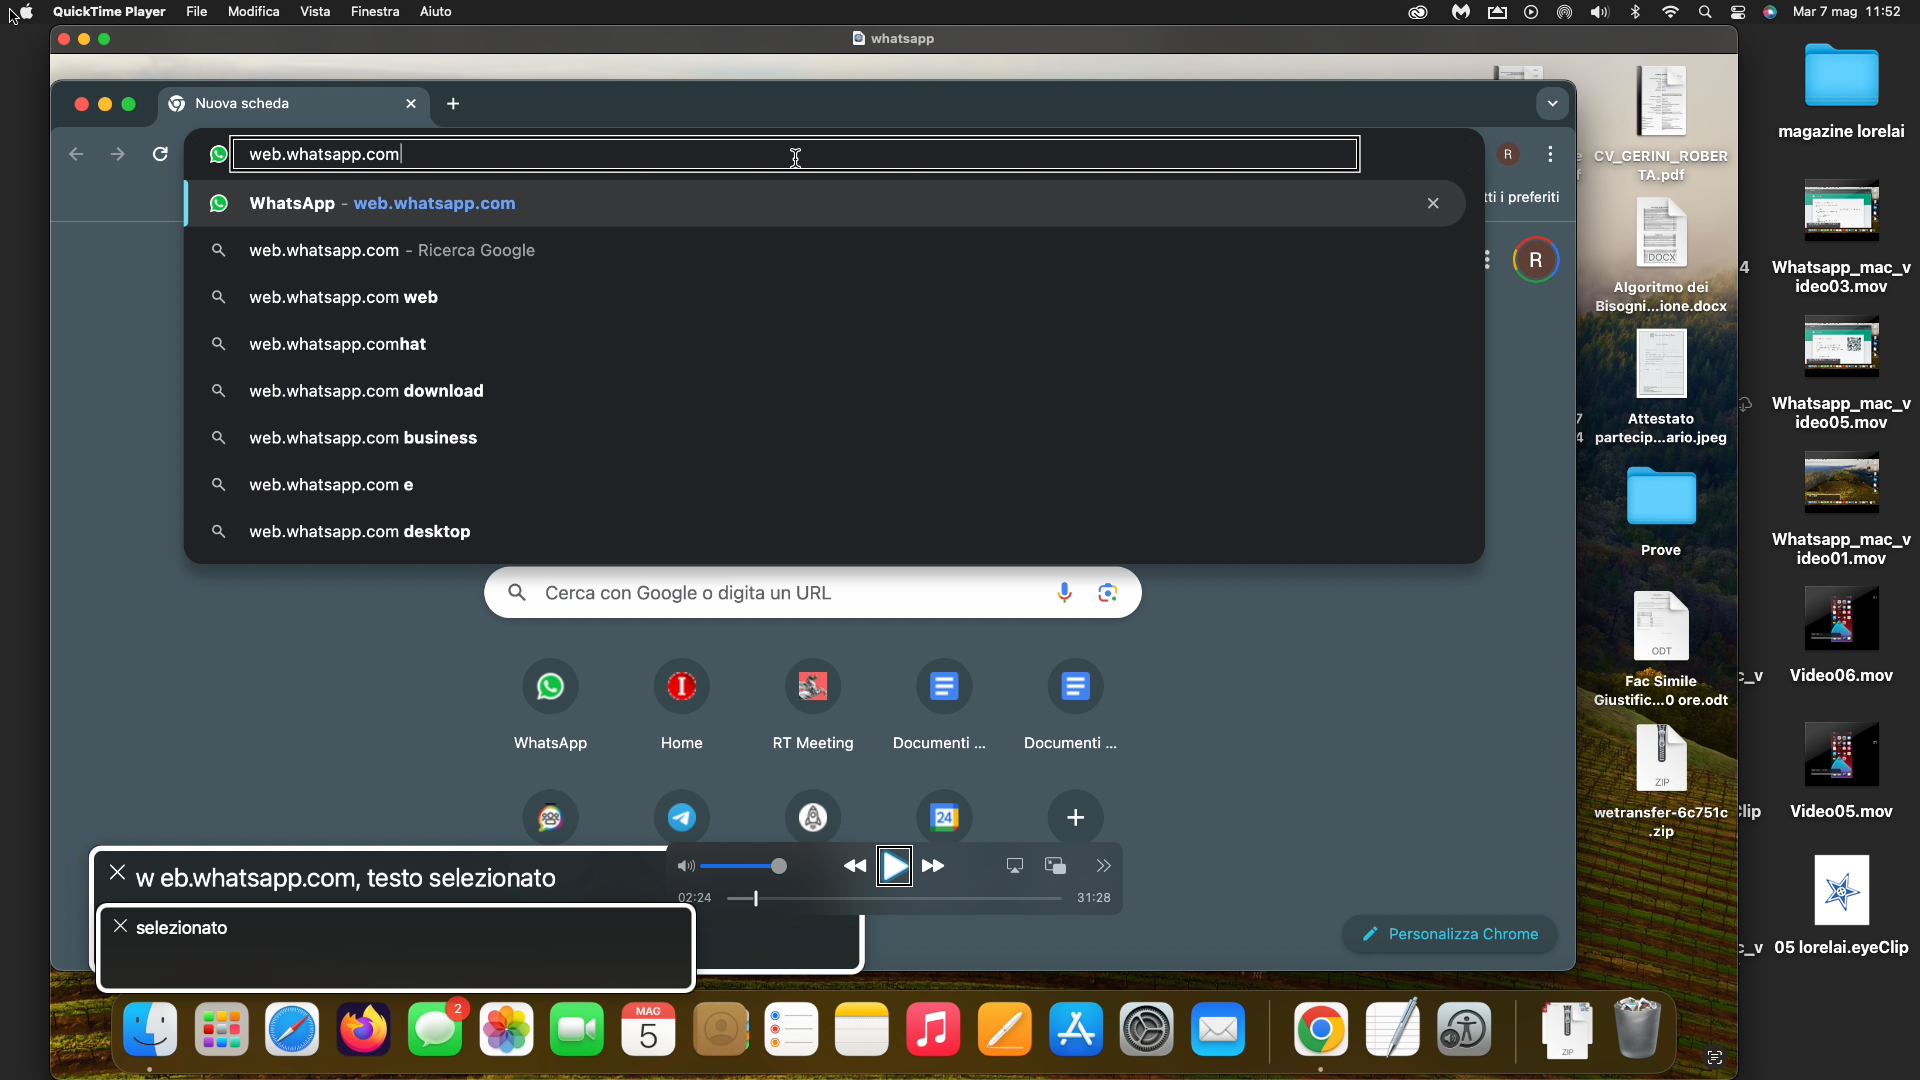 nell’immagine uno screenshot del Mac aperto sul browser Chrome mentre naviga WhatsApp web